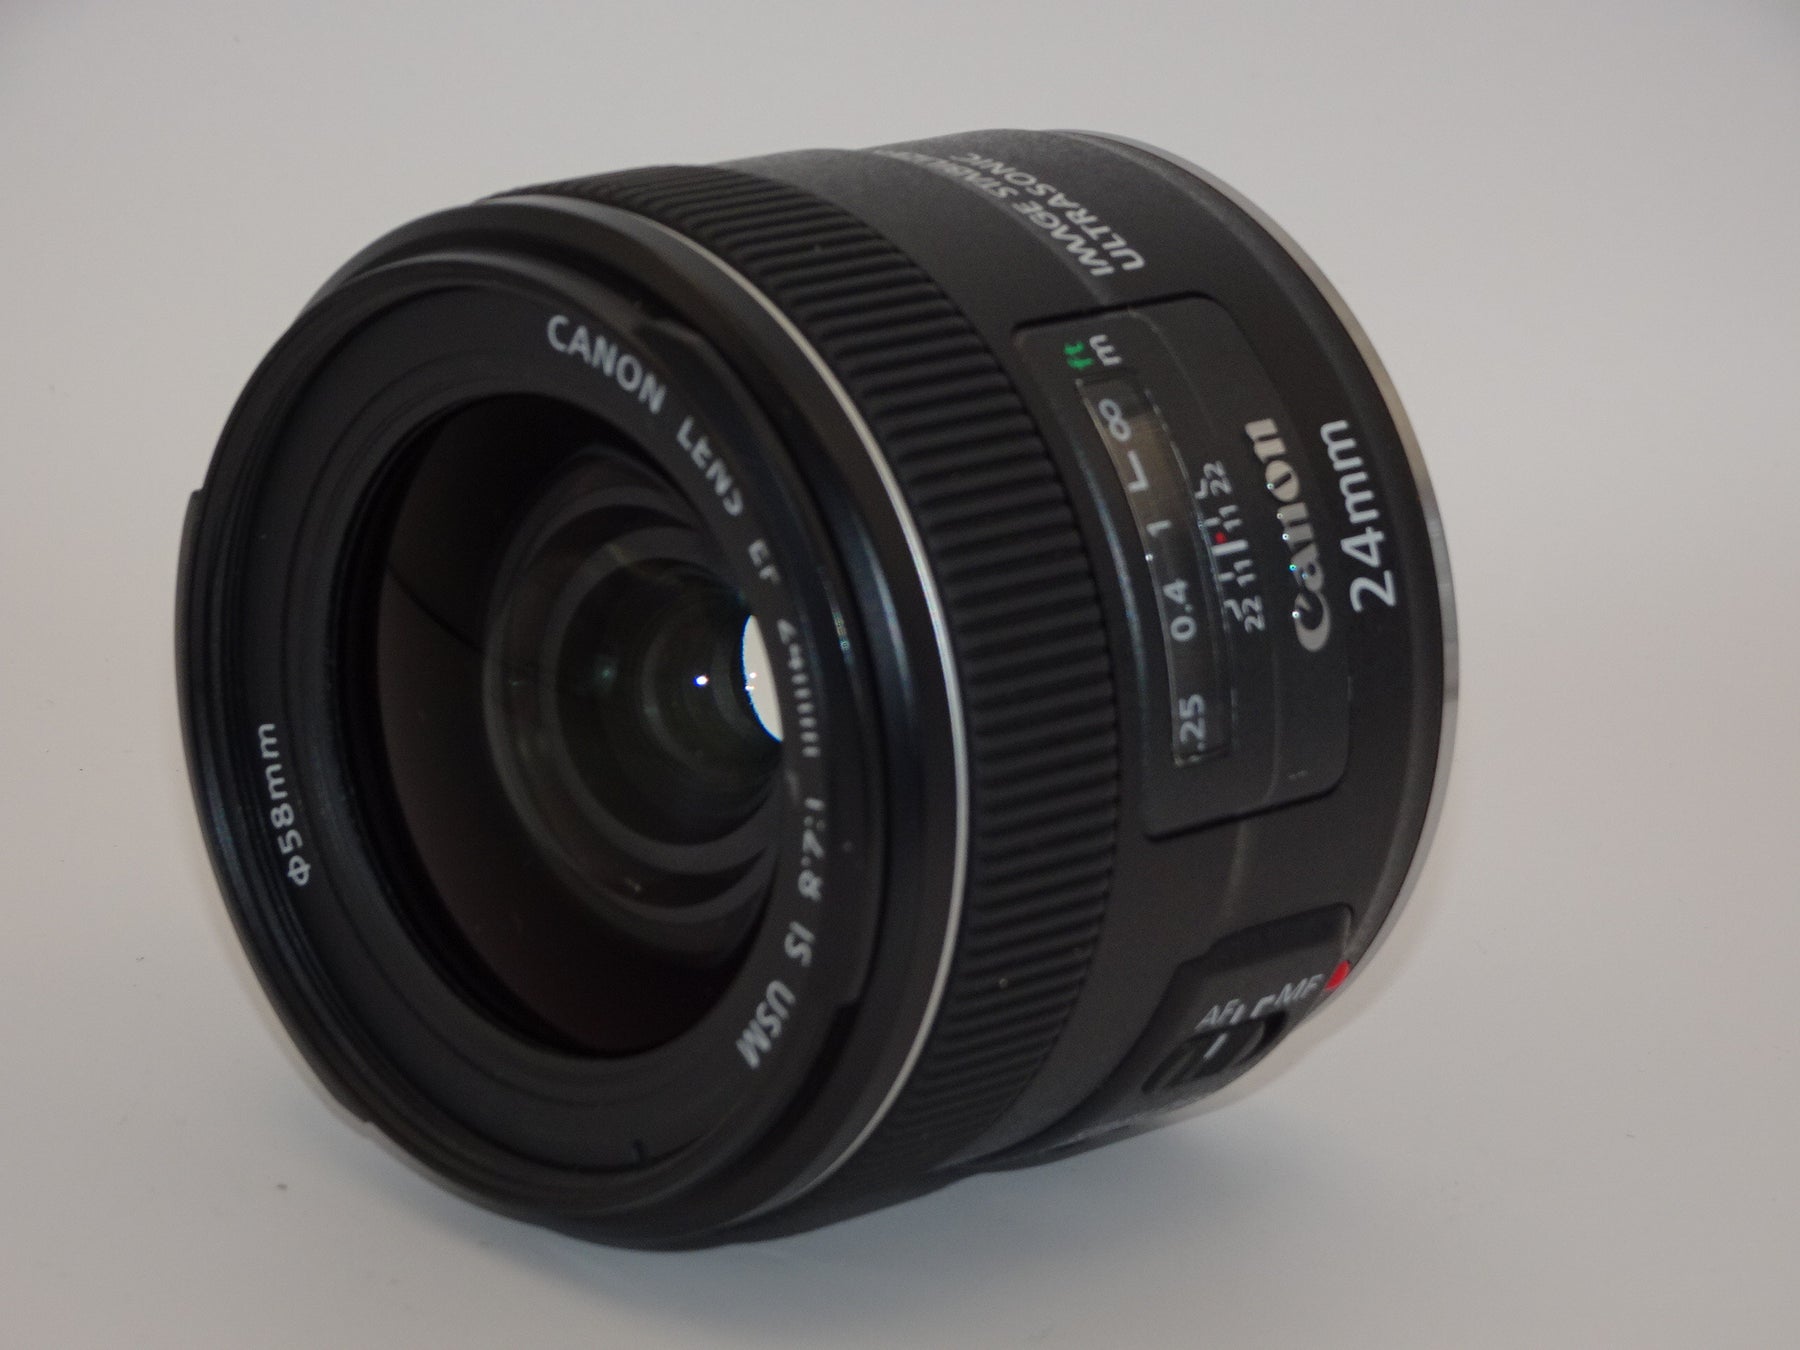 外観特上級】Canon 単焦点レンズ EF24mm F2.8 IS USM